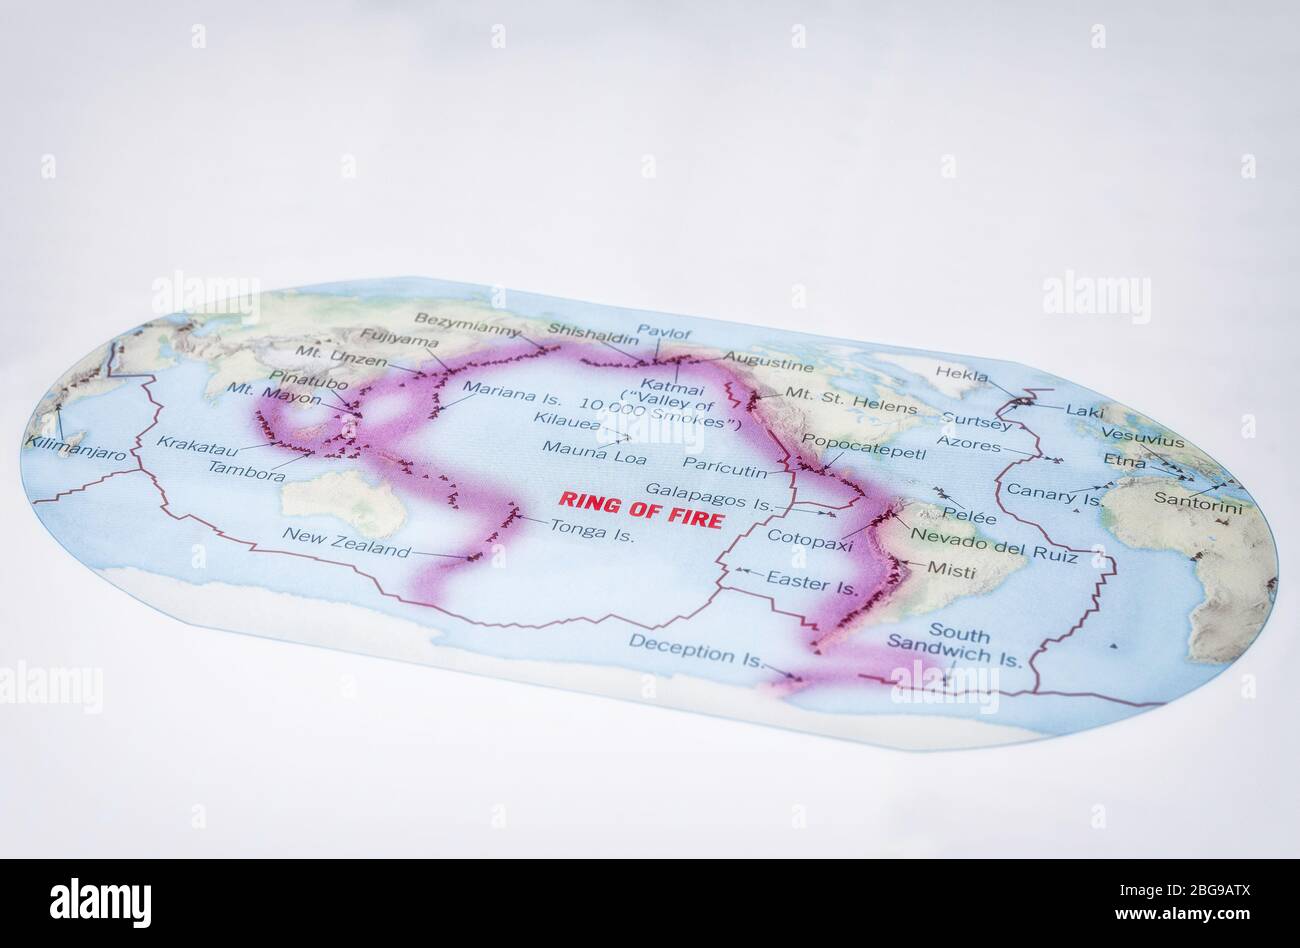 Weltkarte mit dem pazifischen Feuerring und den Grenzen der tektonischen Platten, Farbe, **NUR REDAKTIONELLE VERWENDUNG** Stockfoto